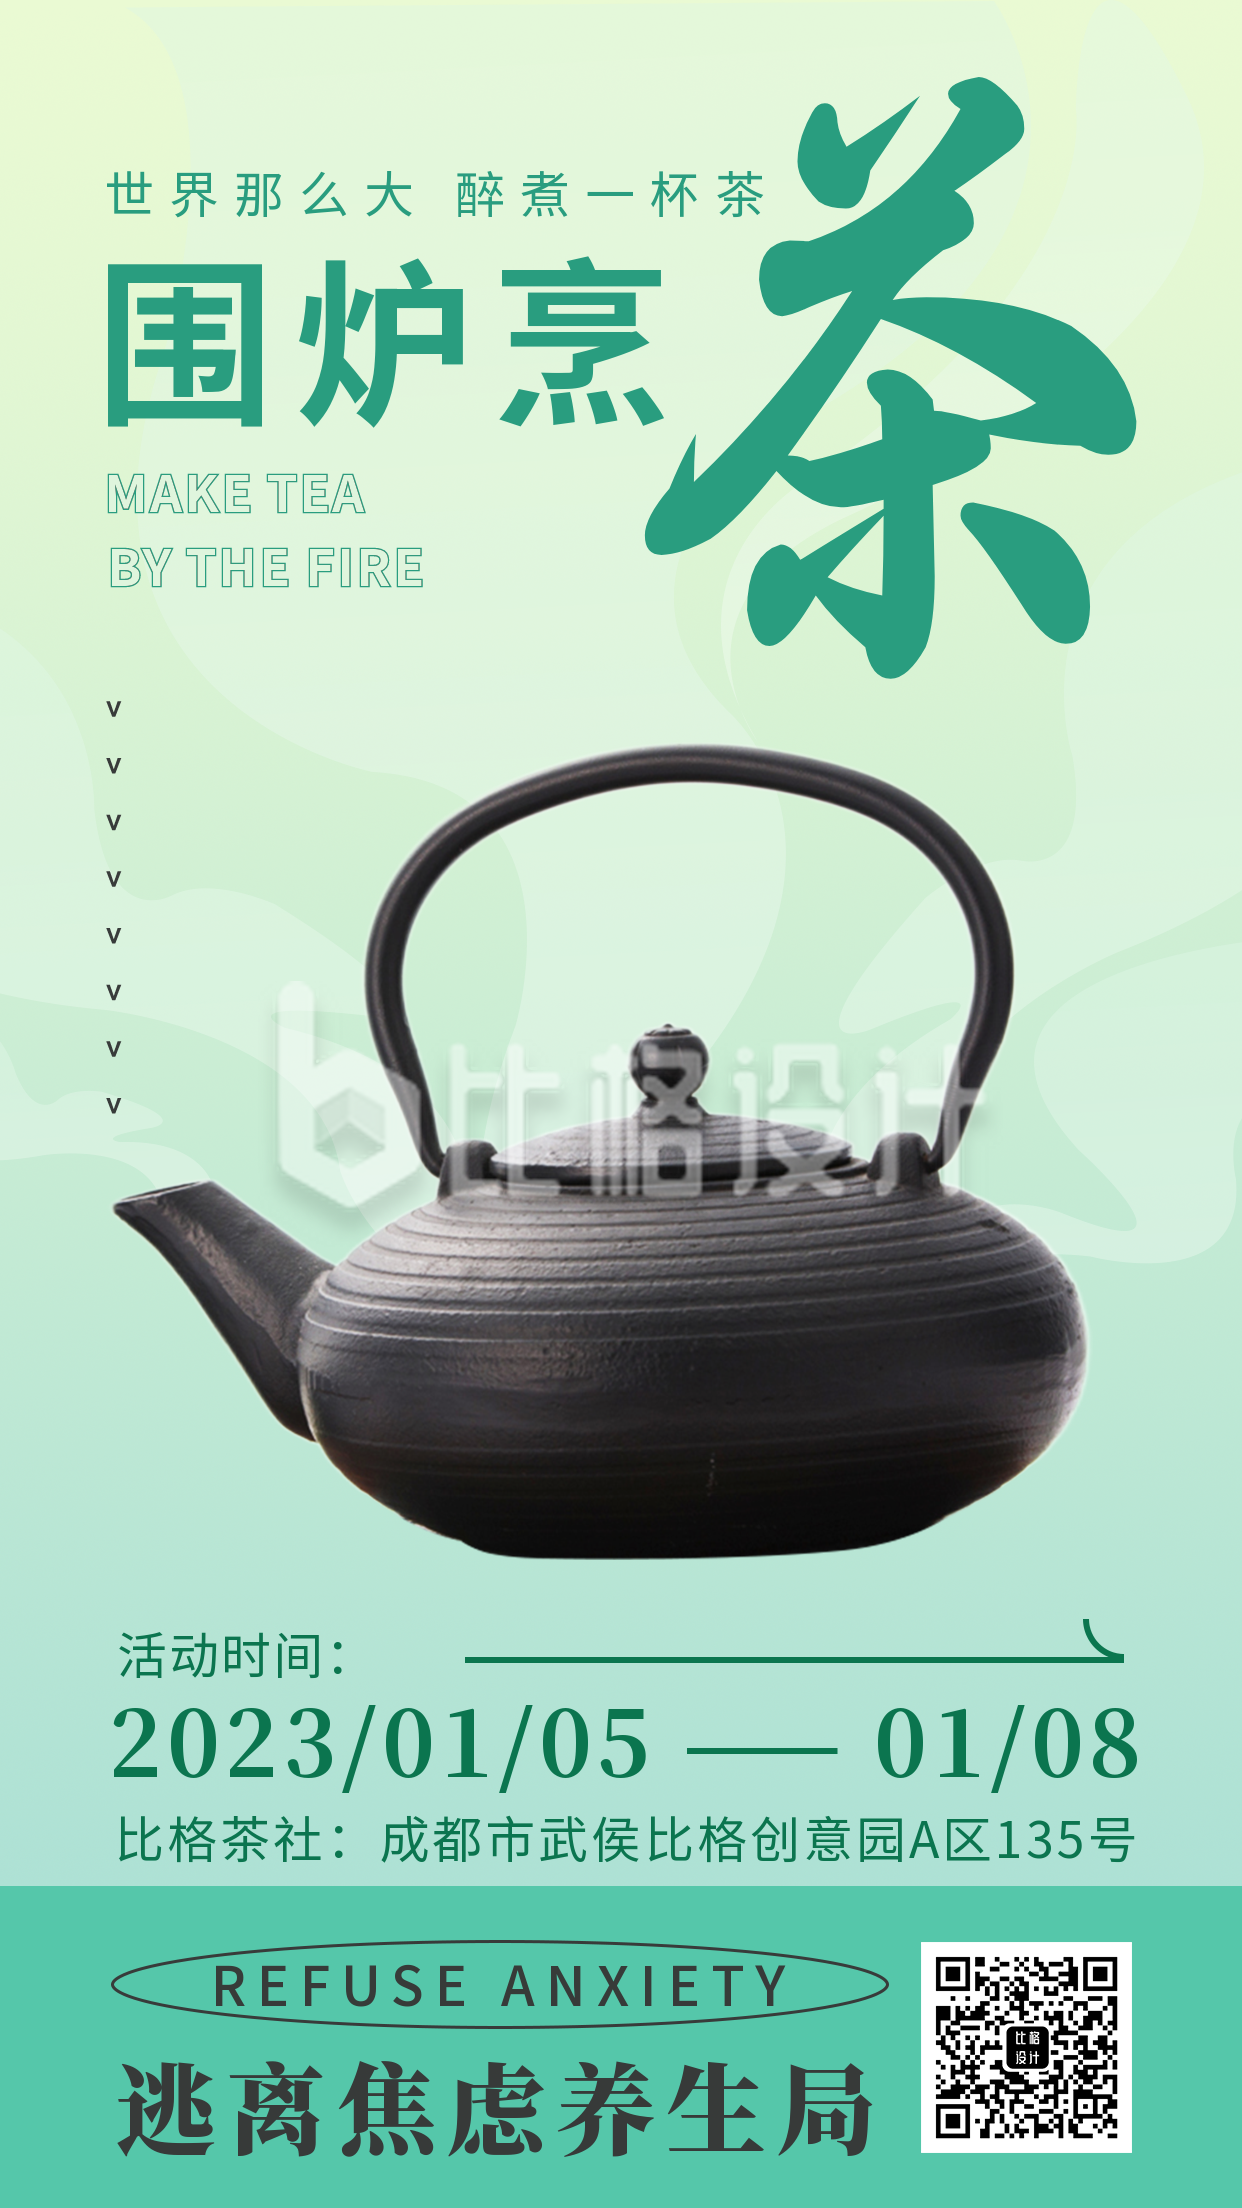 围炉煮茶活动宣传手机海报